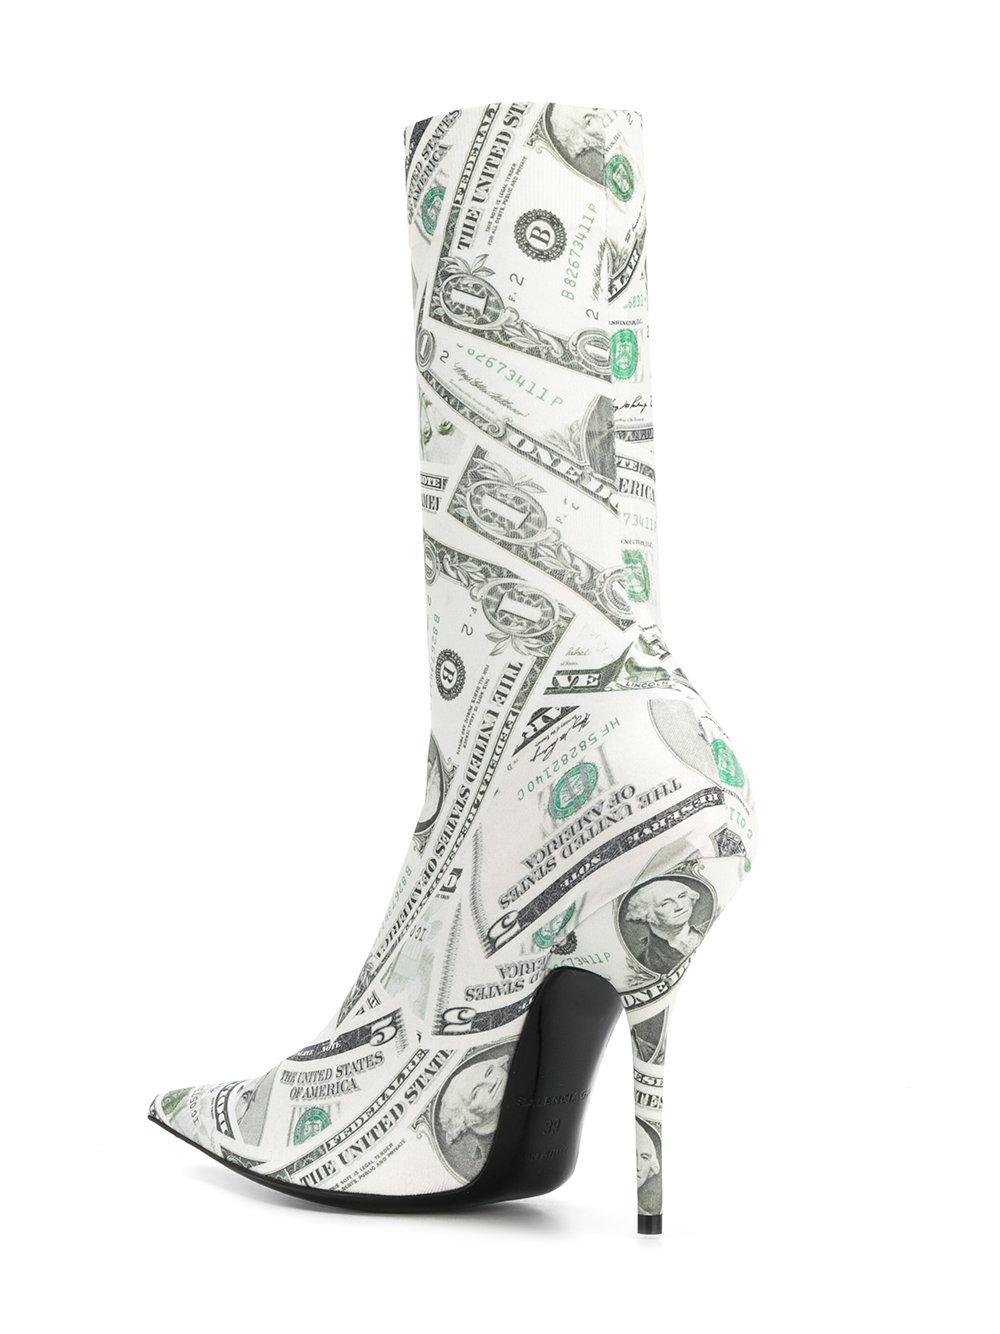 balenciaga dollar boots price